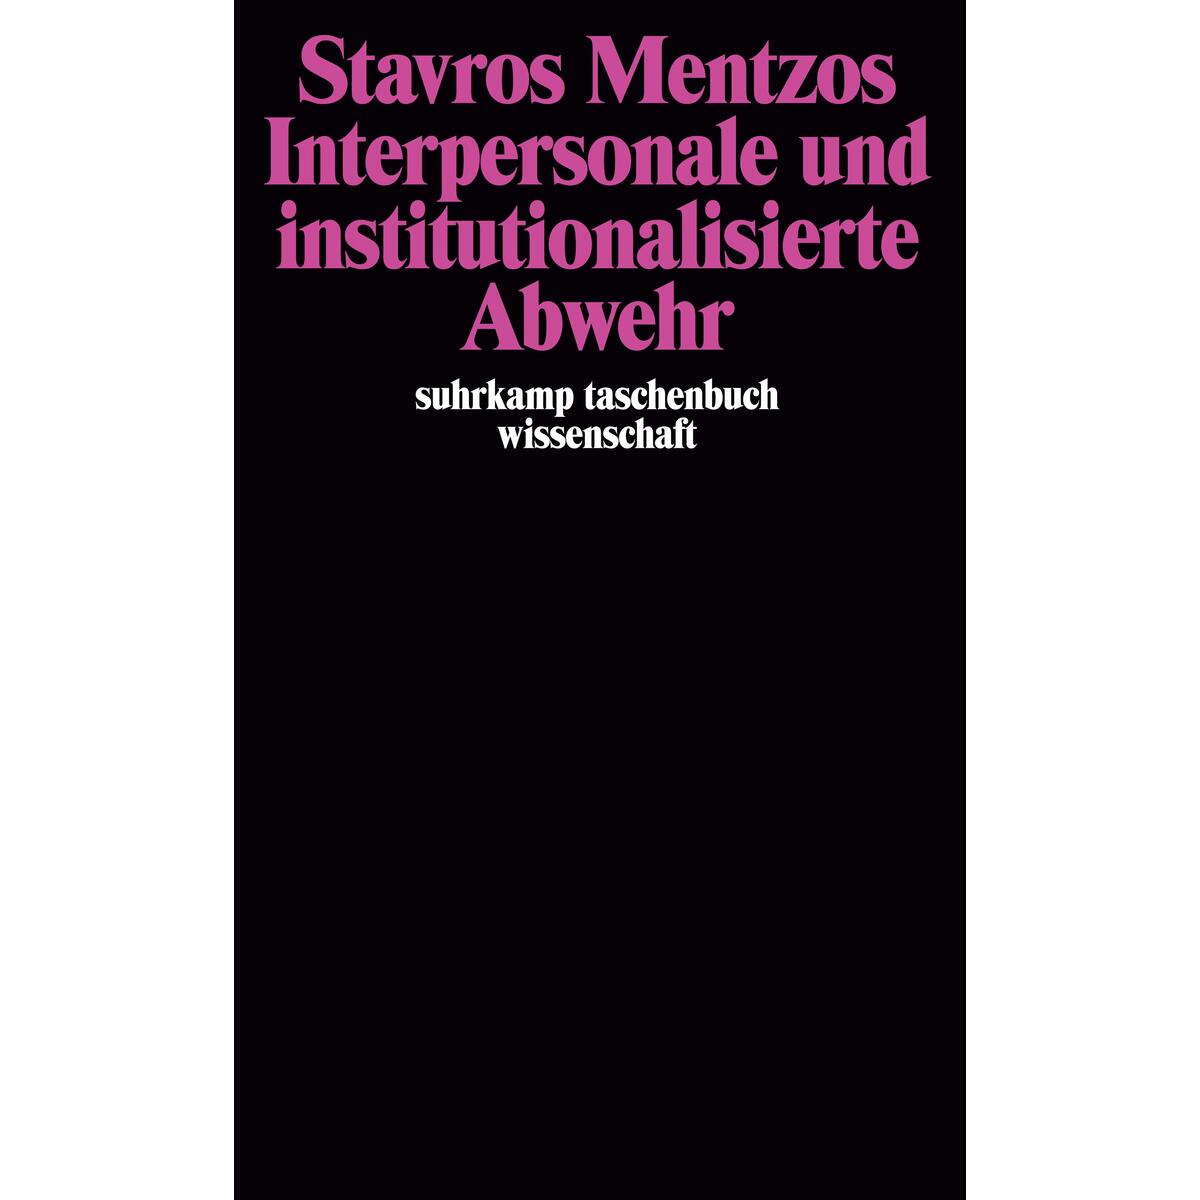 Interpersonale und institutionalisierte Abwehr von Suhrkamp Verlag AG